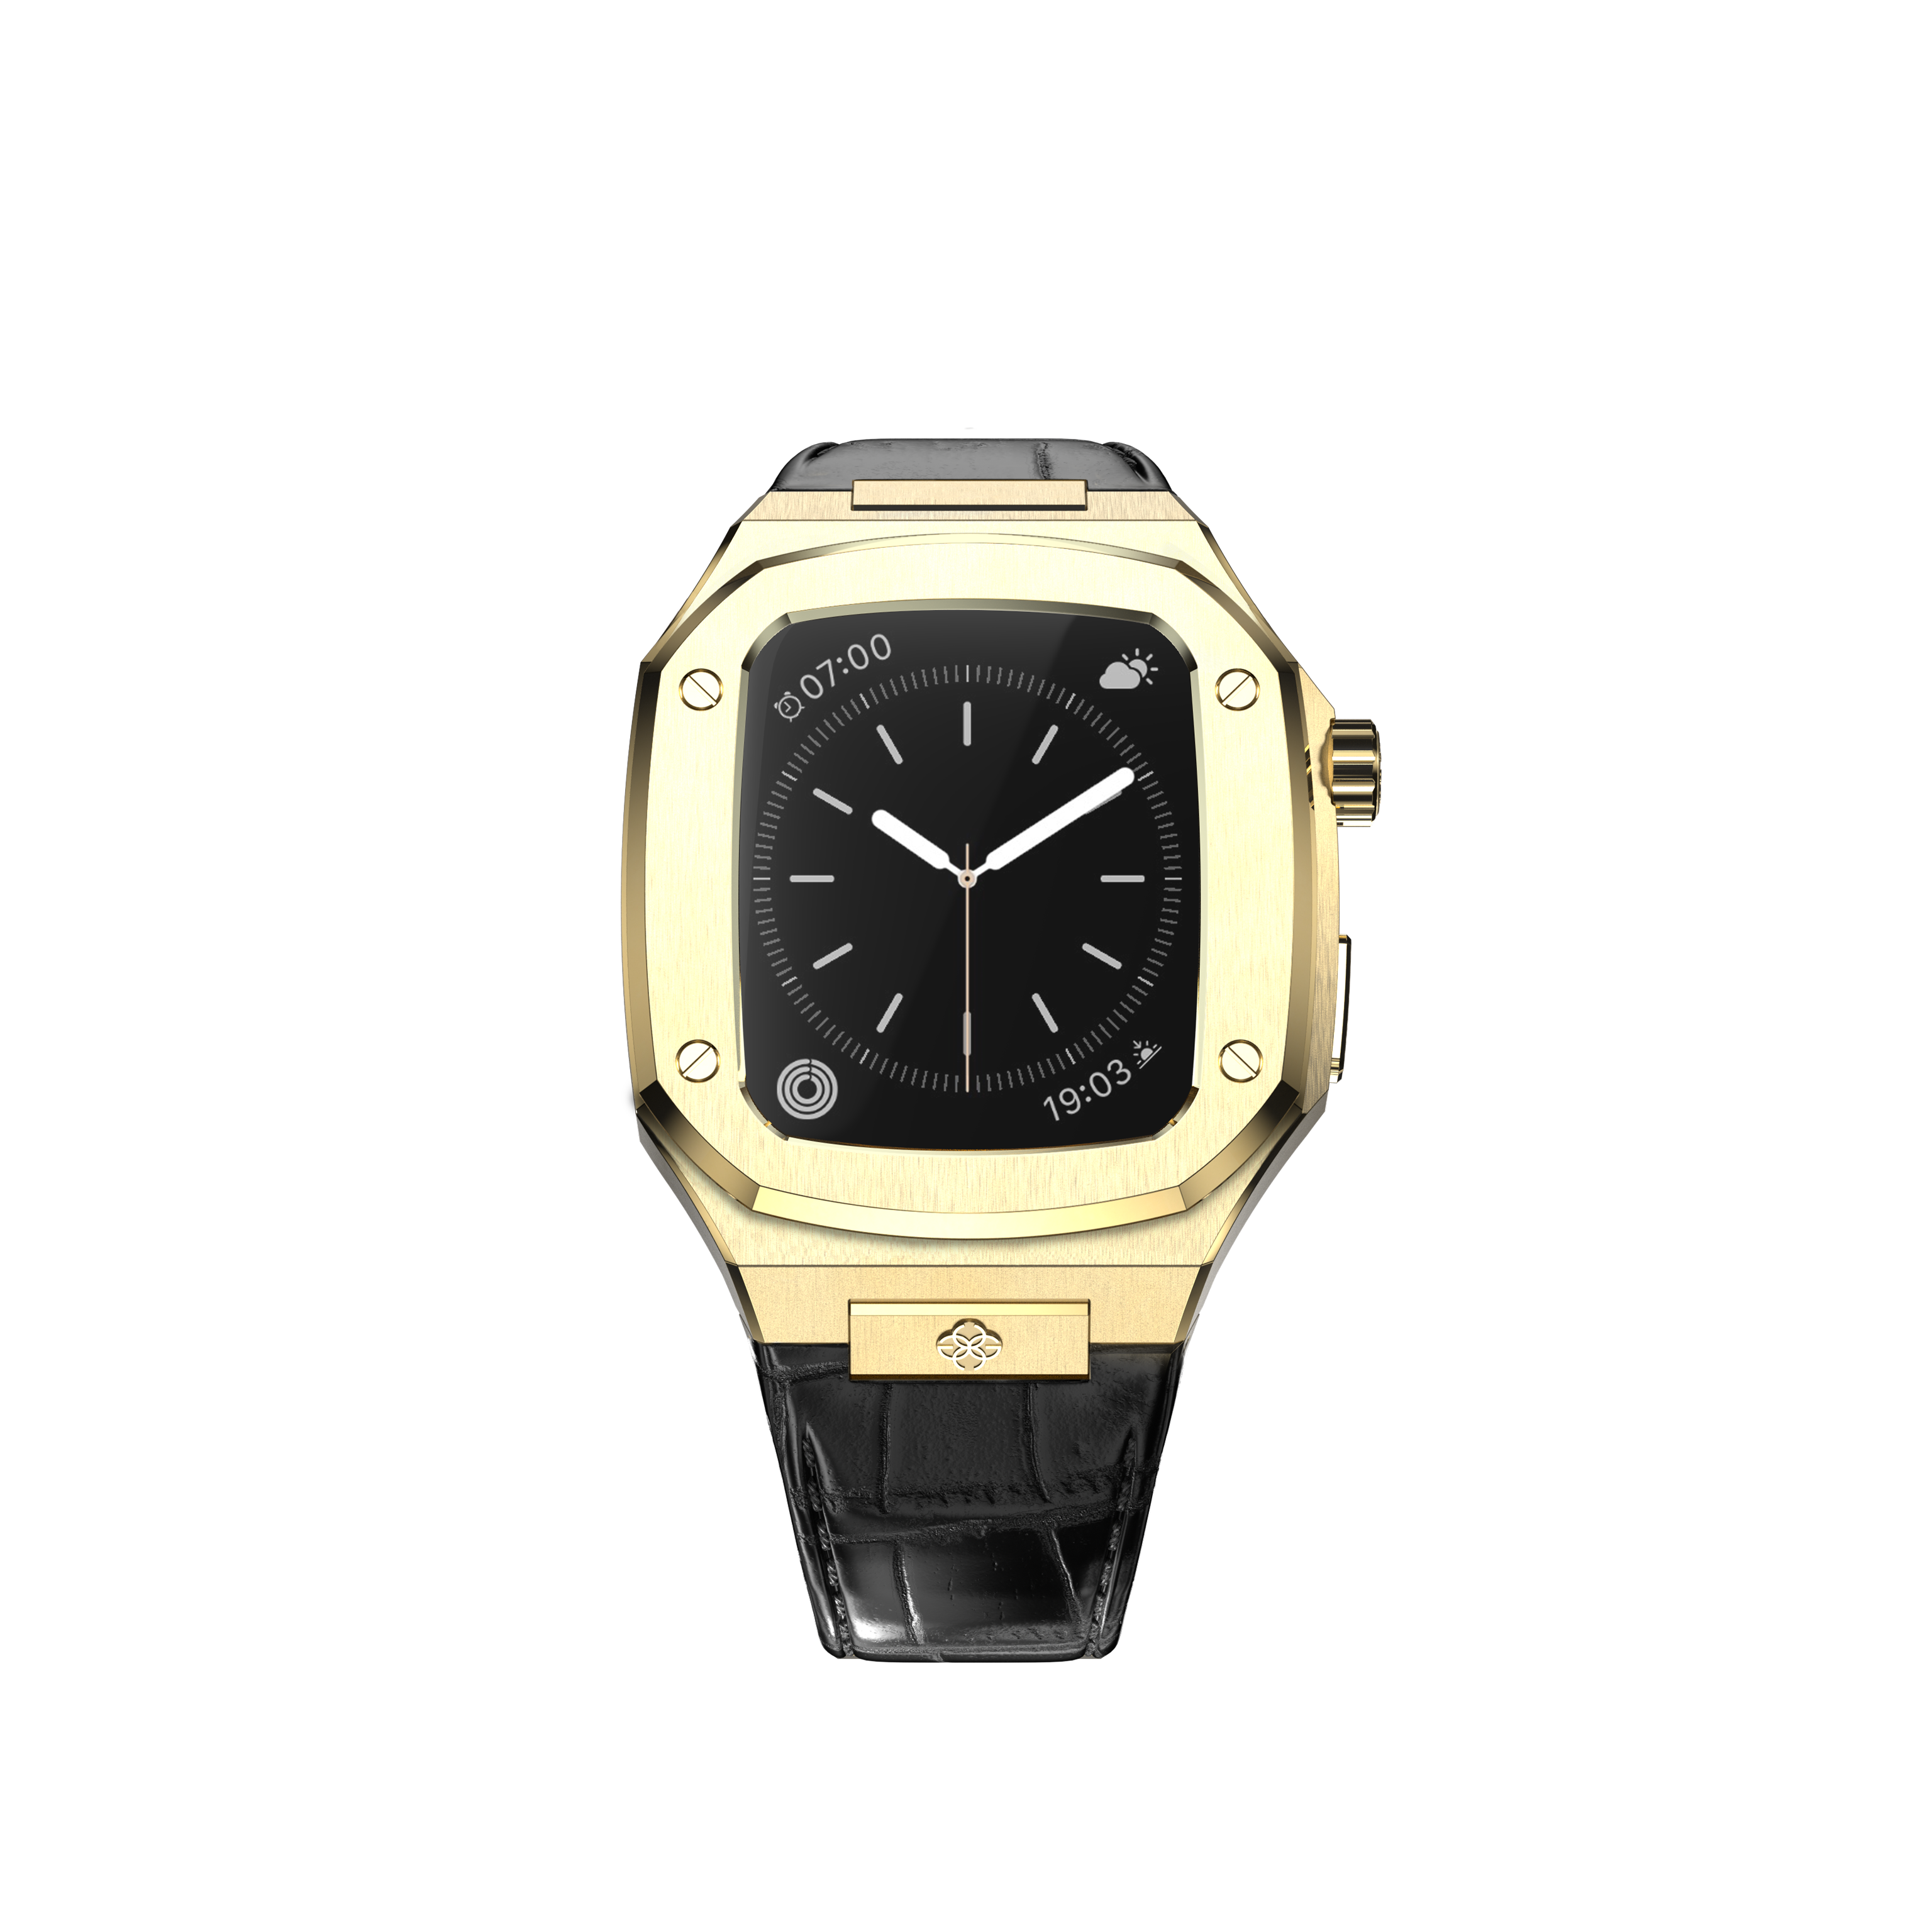 Чехол Golden Concept WC-CL40-G-BK для смарт-часов Apple Watch Series 6 40mm черный